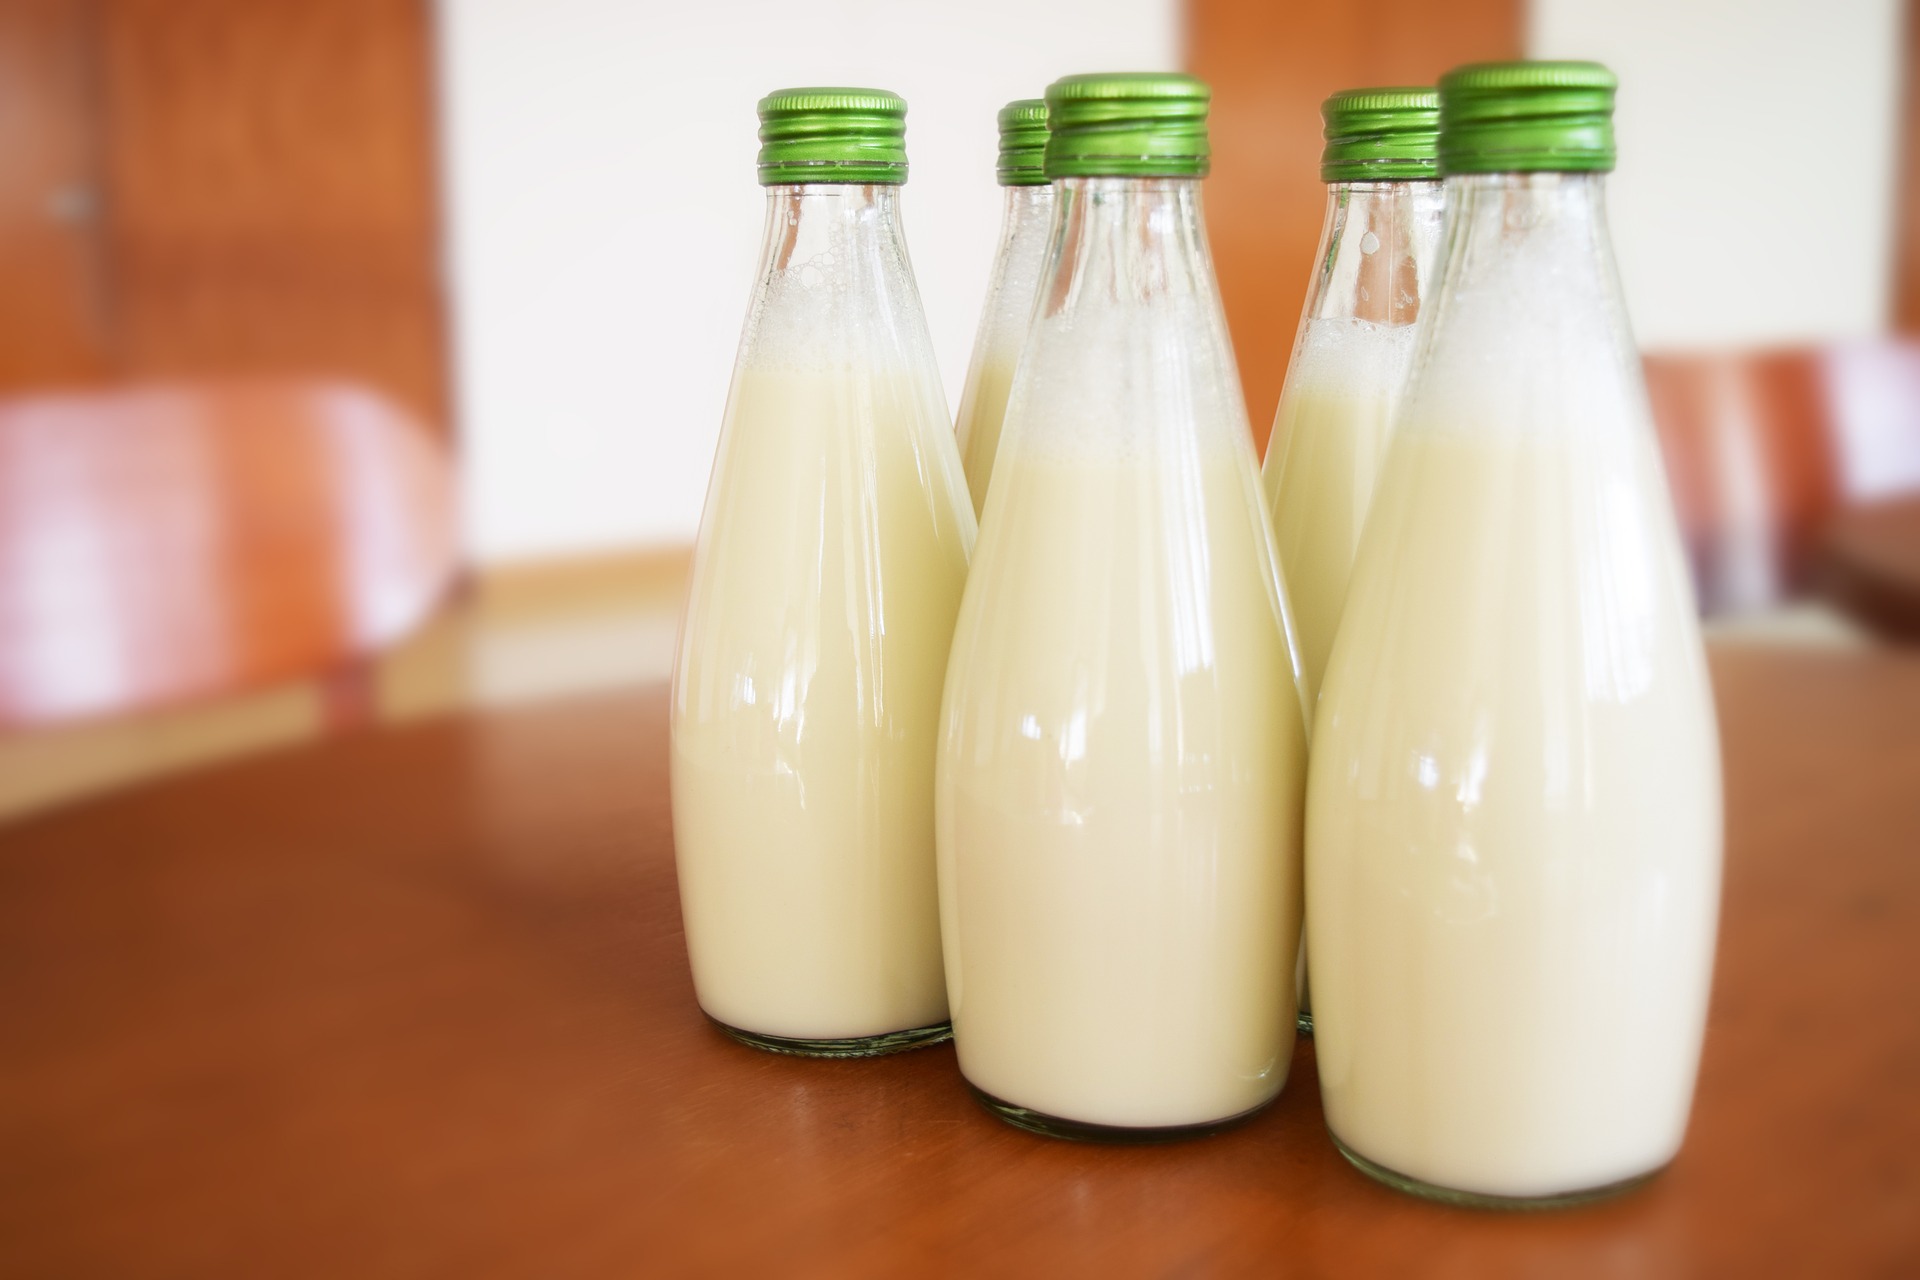 Joghurt wurde genutzt um Milch länger haltbar zu machen (Bild:Pixabay/falovelykids)